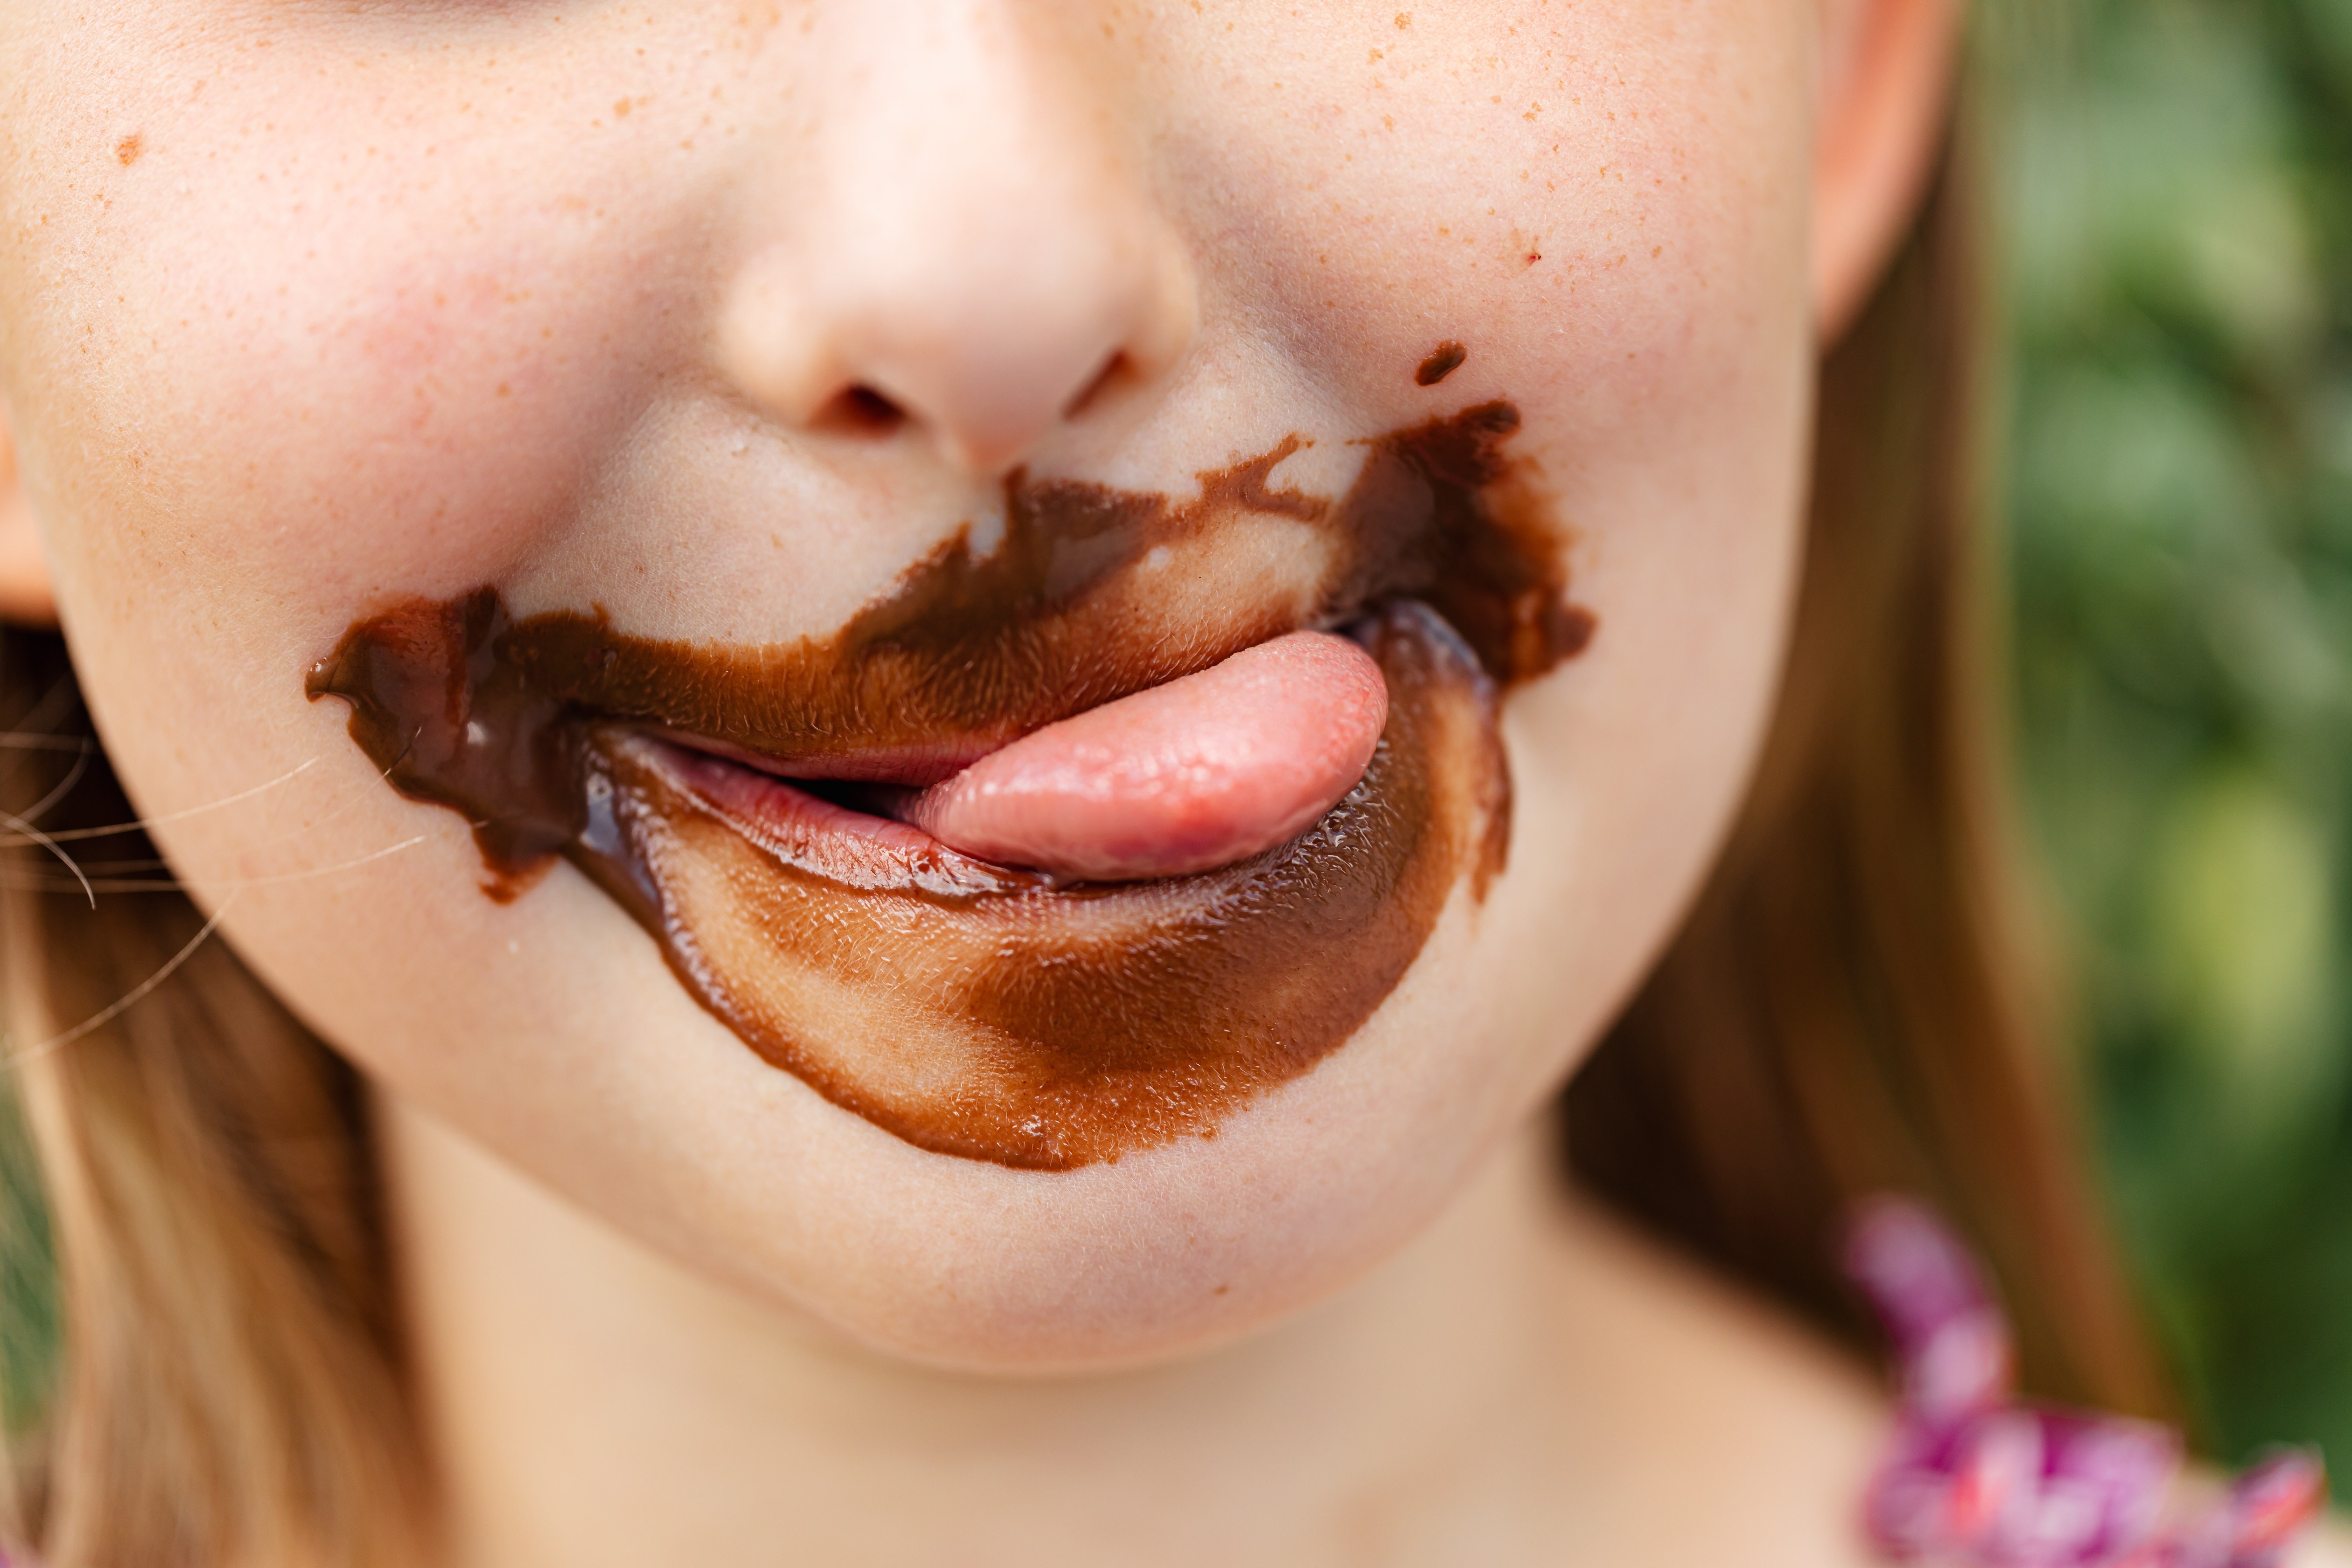 Criança com boca suja de chocolate (Foto: Karolina Grabowska/Pexels)